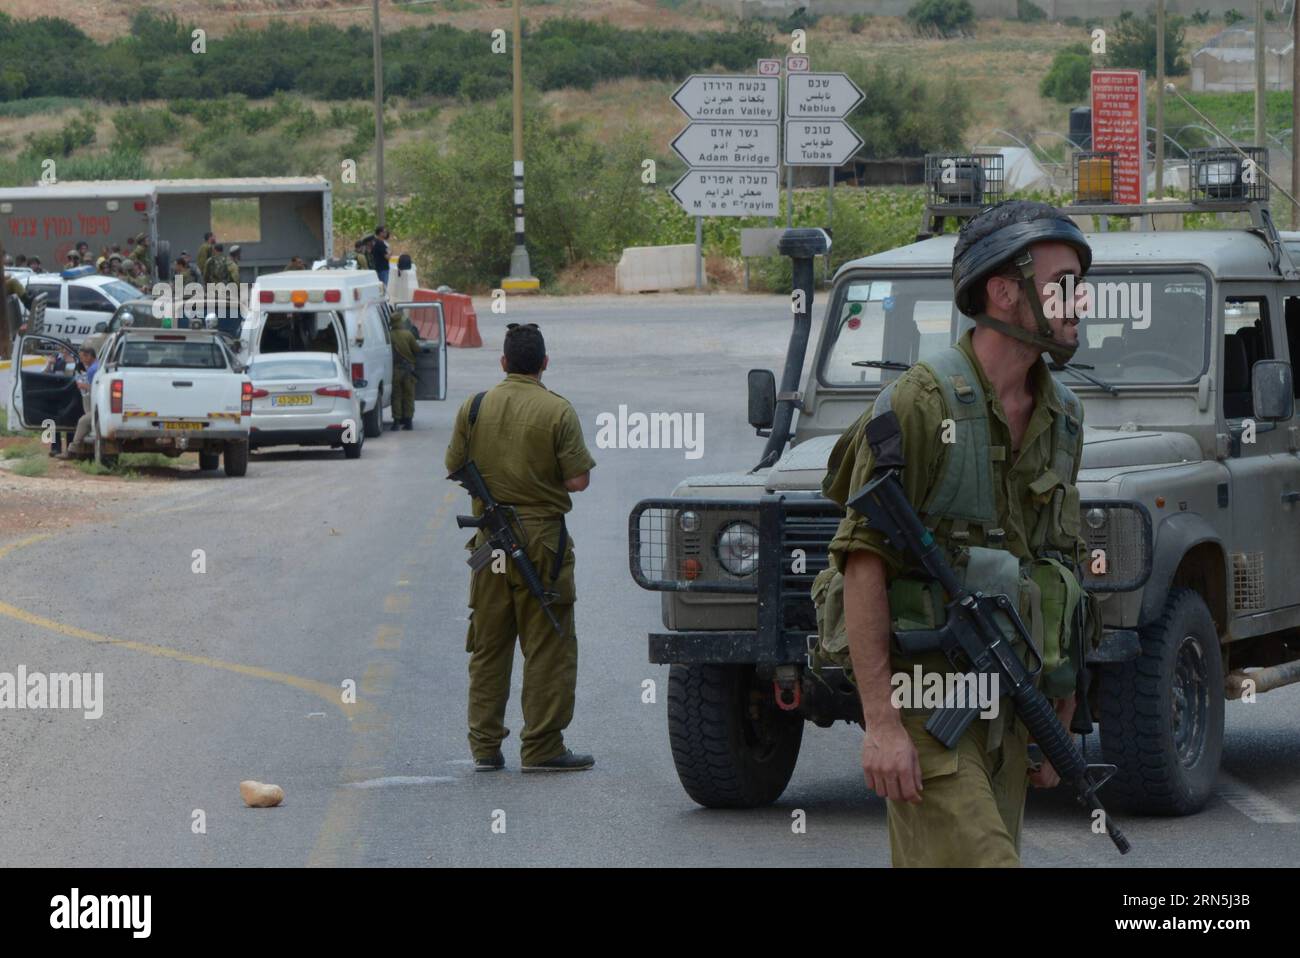 Des soldats de Sraeli dressent la garde sur la zone à la suite d une fusillade au poste de contrôle de BKA Aot dans la vallée du Jourdain, à l est de Naplouse, une zone de Cisjordanie près de la frontière israélienne avec la Jordanie, le 26 juin 2015. Un palestinien a été abattu vendredi après avoir ouvert le feu sur des soldats israéliens à un poste de contrôle en Cisjordanie, a déclaré le porte-parole des Forces de défense israéliennes (FDI) dans un communiqué. L'homme palestinien conduisant une voiture a ouvert le feu sur les soldats, tandis qu'en réponse, les soldats au poste de contrôle ont tiré sur l'homme armé palestinien qui est mort plus tard de ses blessures, a déclaré l'armée israélienne, sans fournir de Banque D'Images